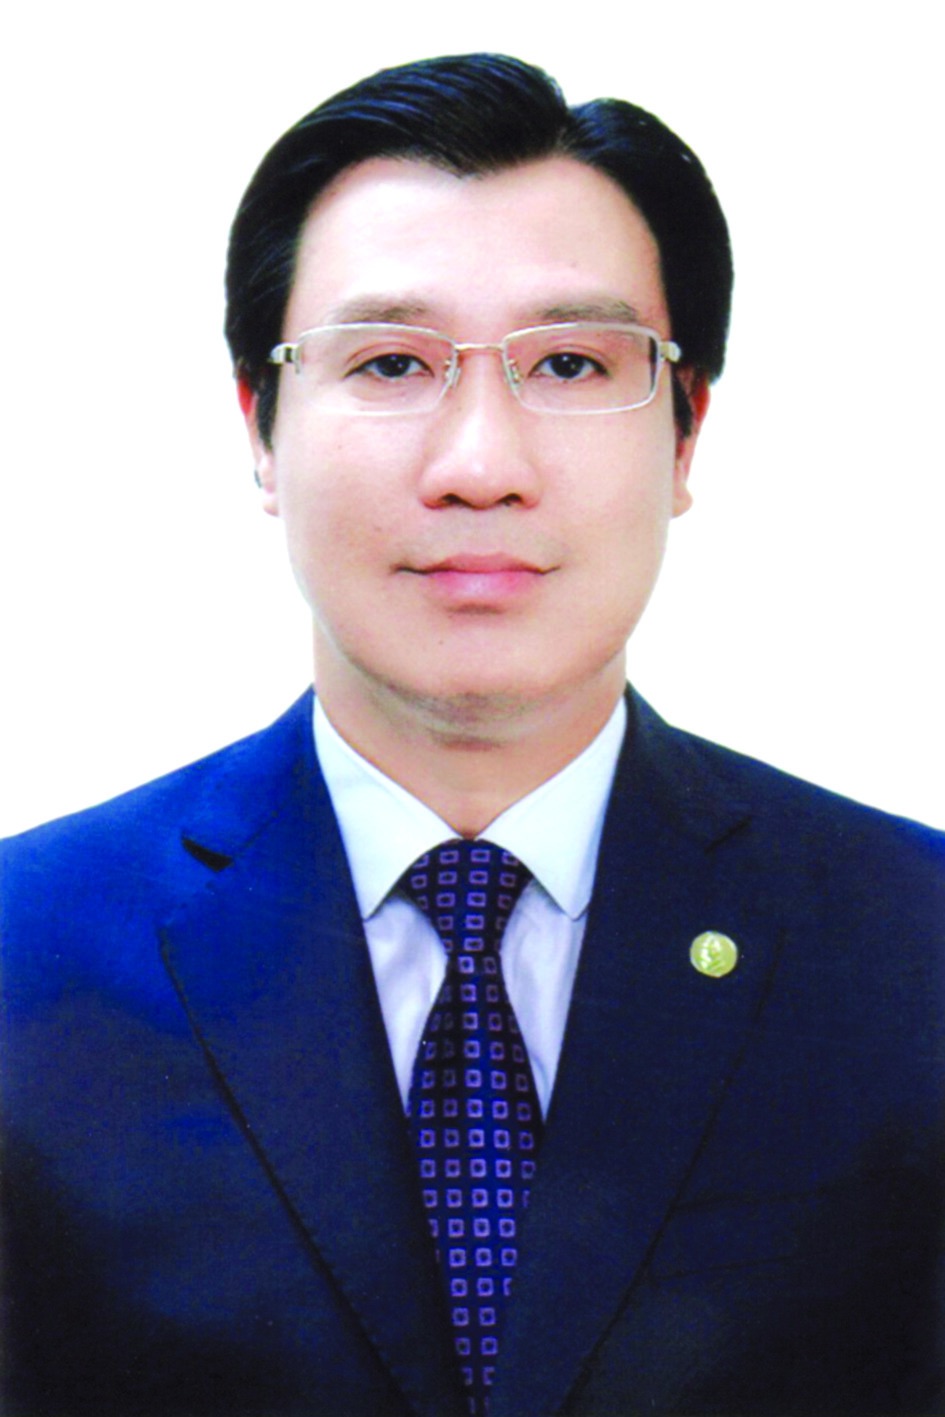 Chương trình hành động của ông Nguyễn Thanh Bình, ứng cử viên đại biểu HĐND TP Hà Nội nhiệm kỳ 2021 - 2026 - Ảnh 1